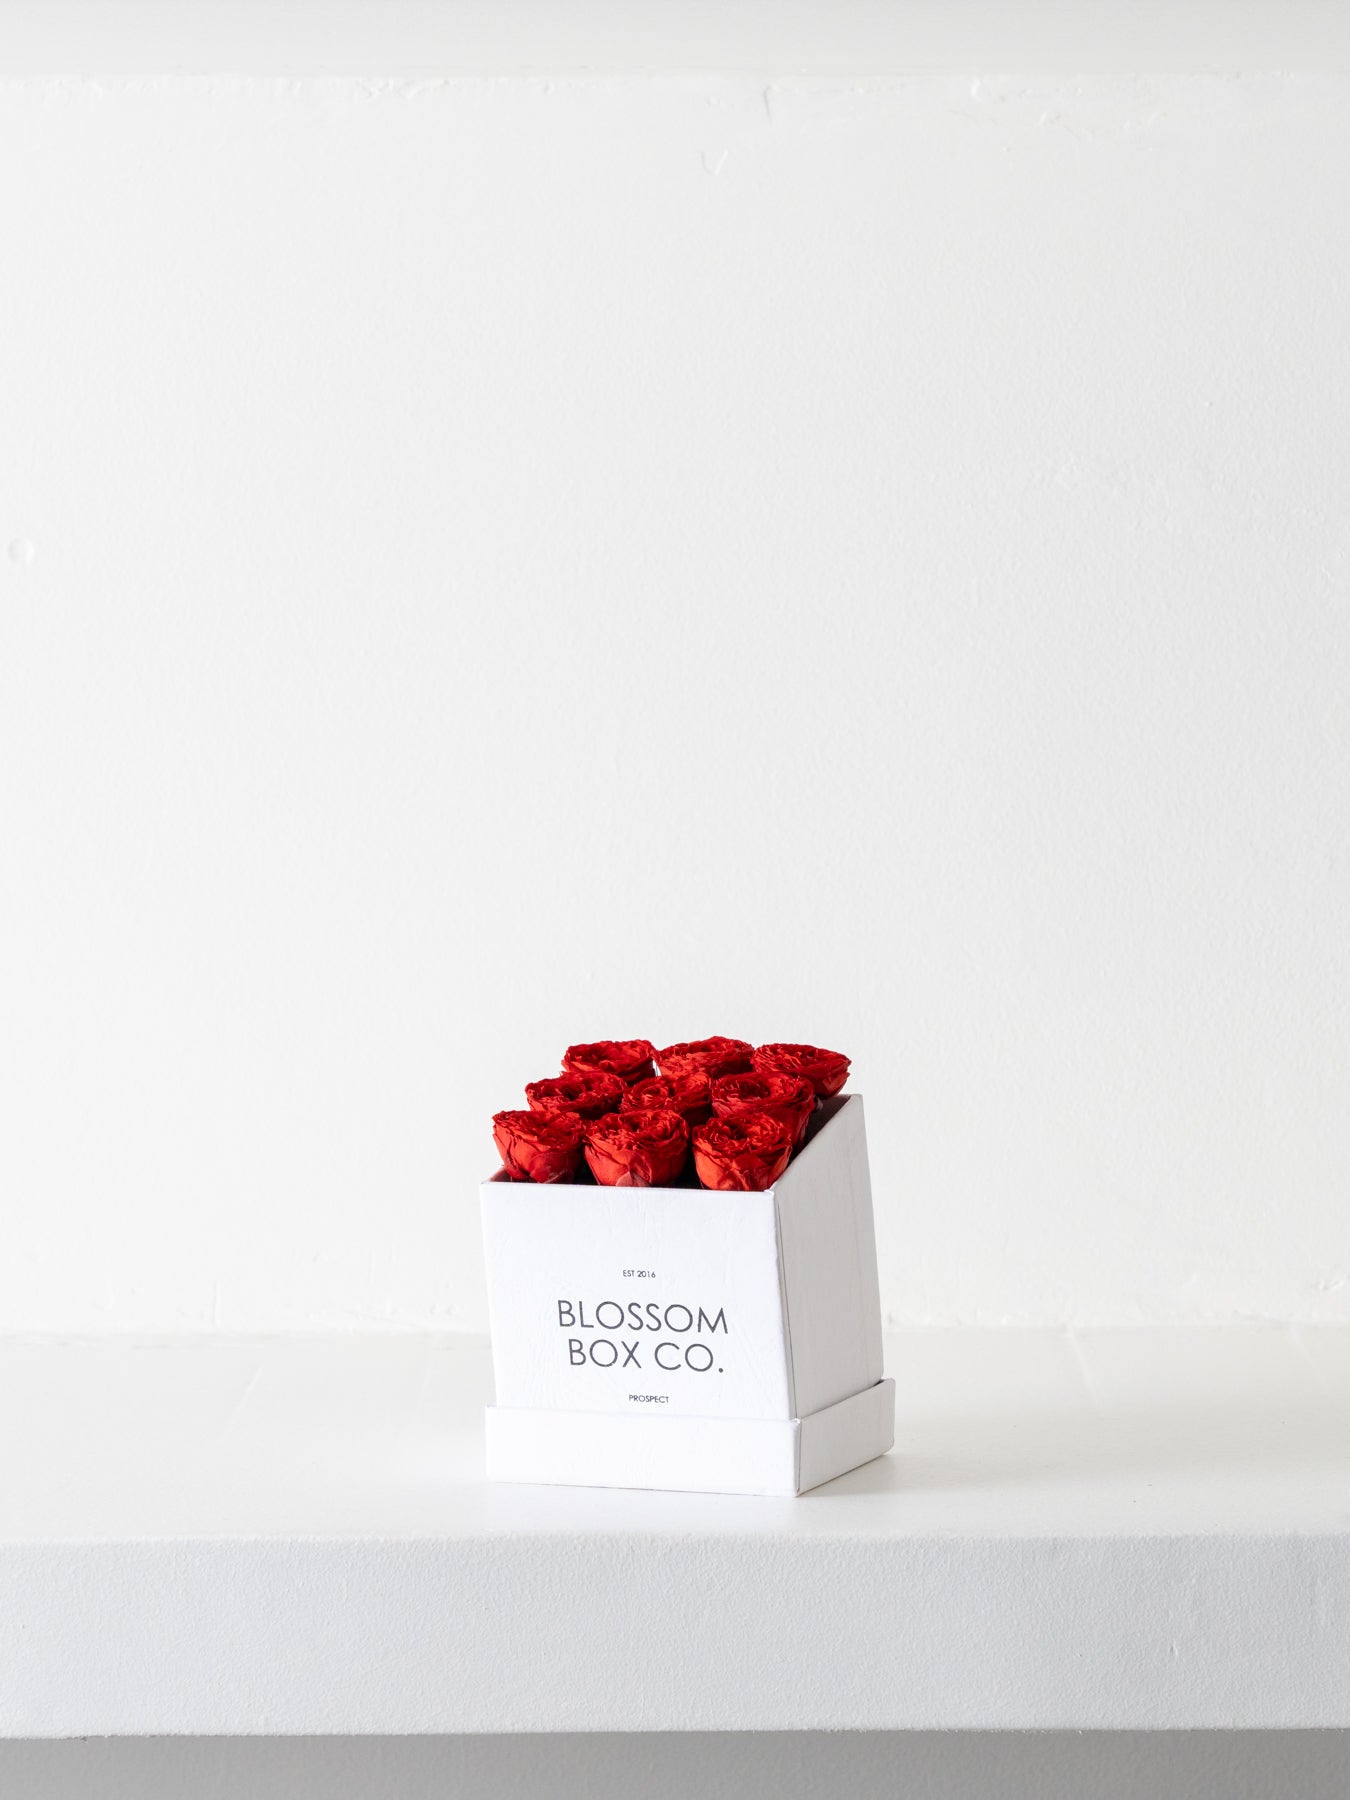 Limited Edition Valentine’s La Petite Box